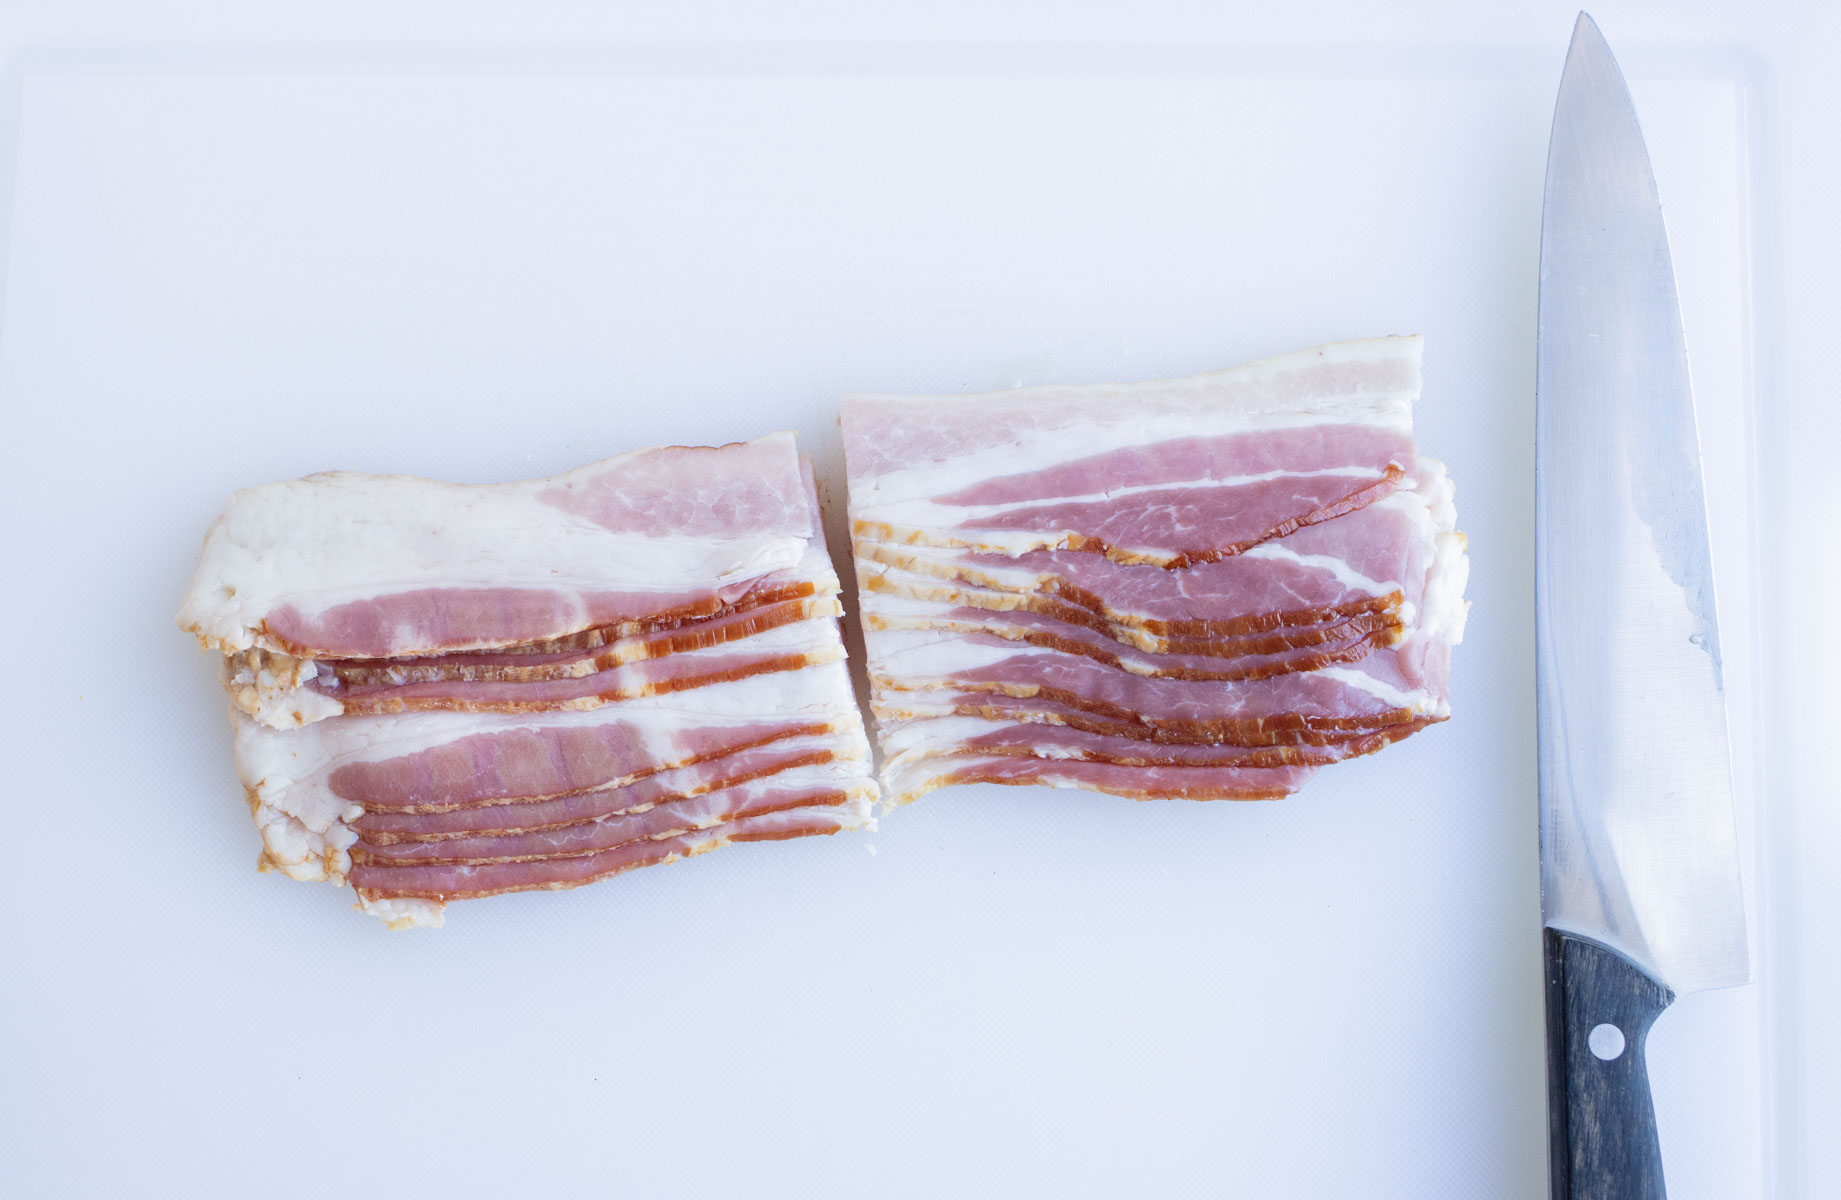 Bacon is cut in half on a cutting board.